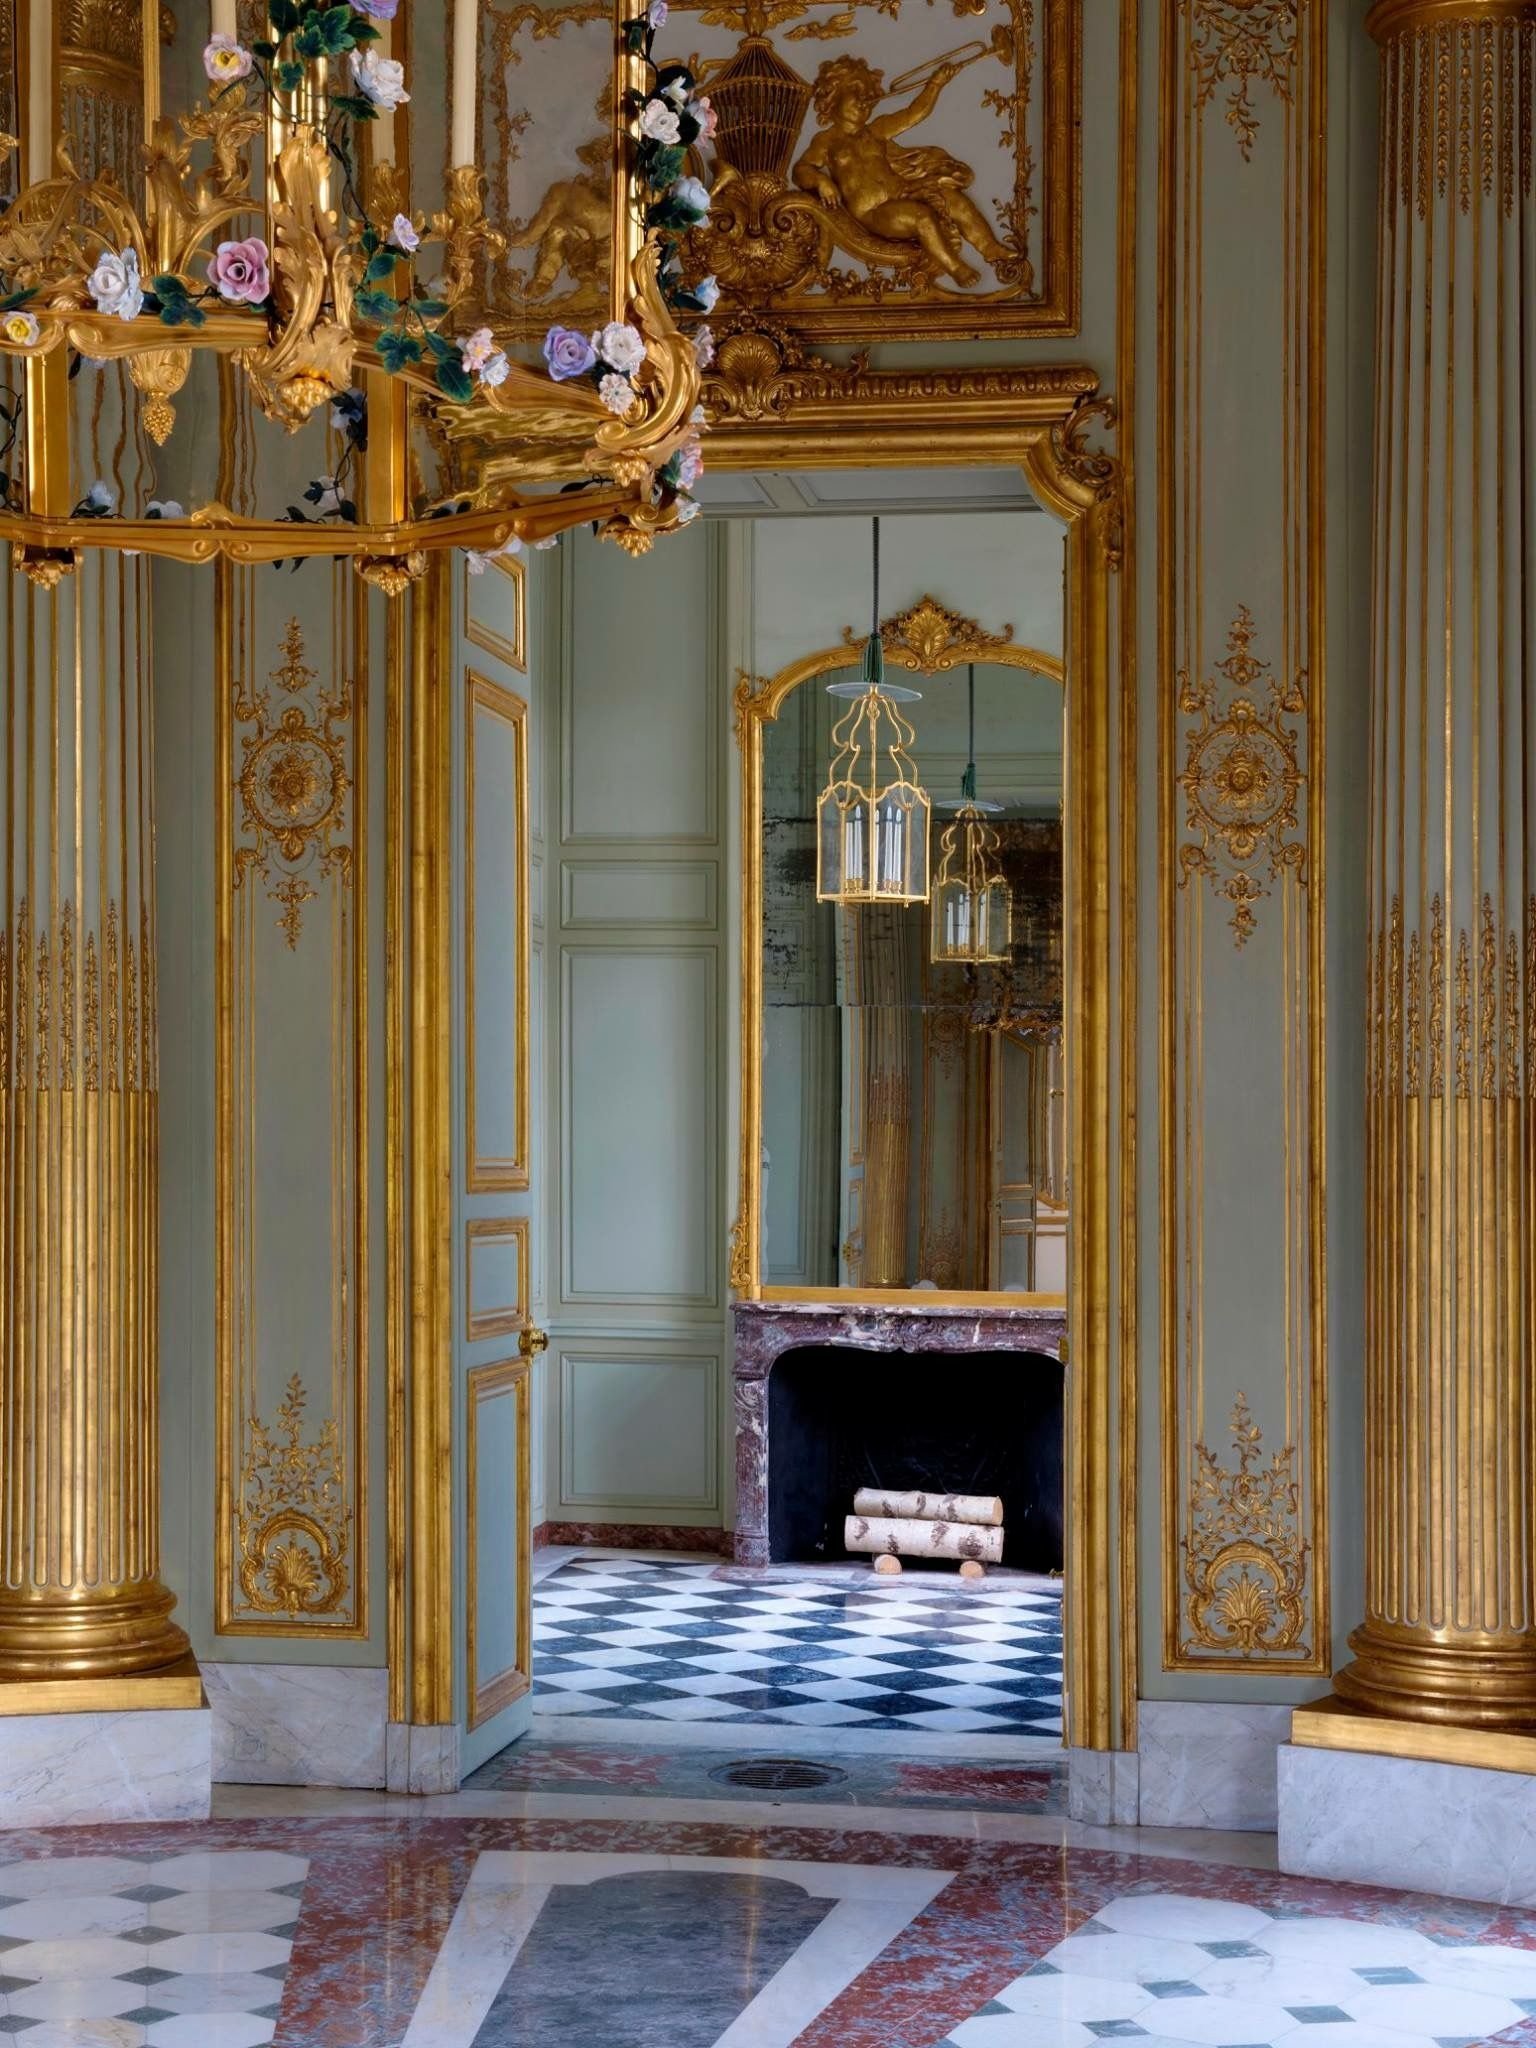 Версаль интерьер. Версаль интерьеры дворца. Дворцовые интерьеры 18 века Версаль. Малый Трианон в Версале интерьер. Версальский дворец внутри.